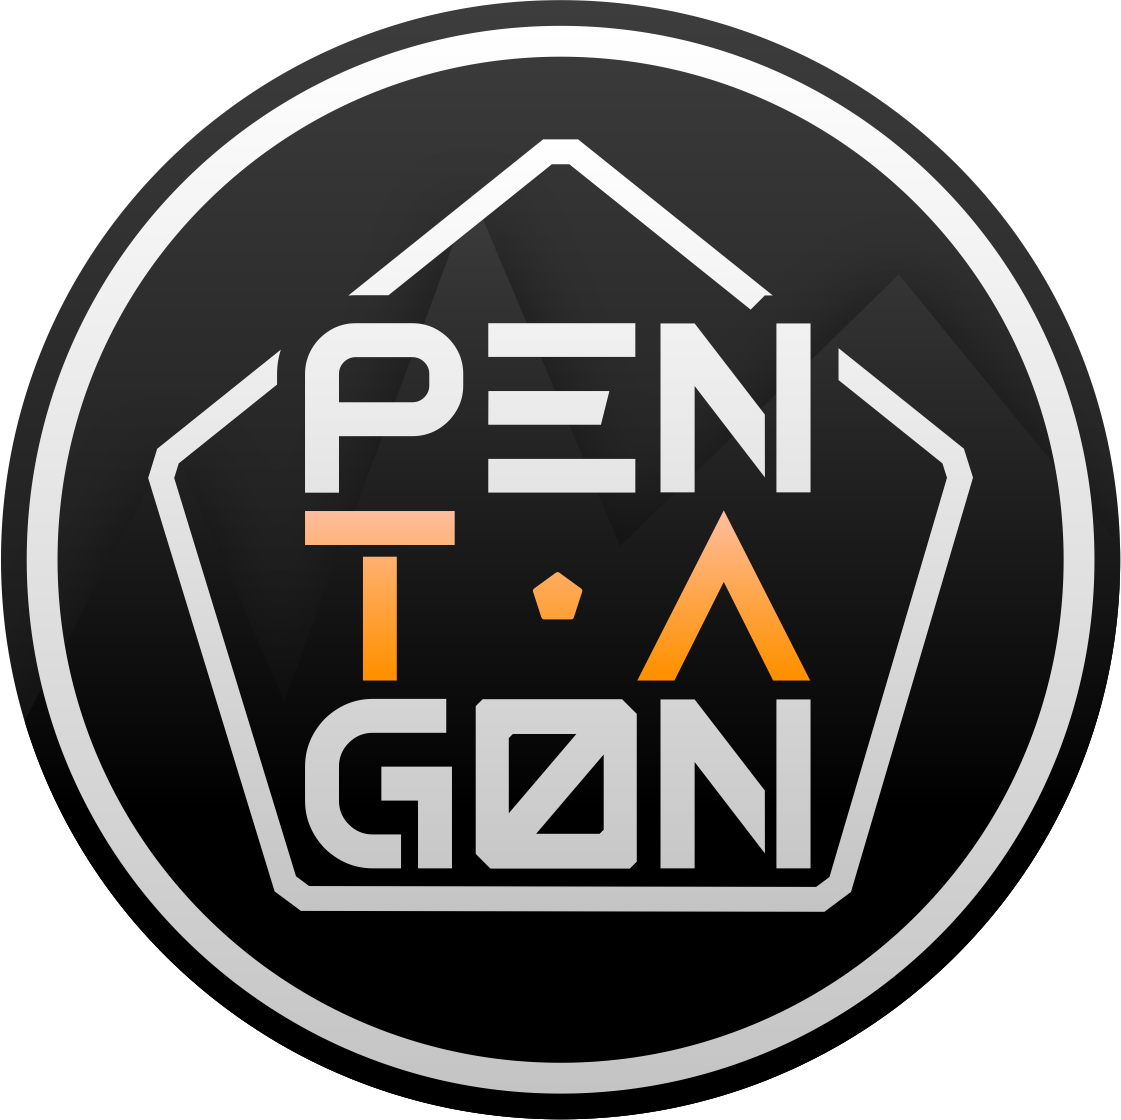 Pentagon 2.0